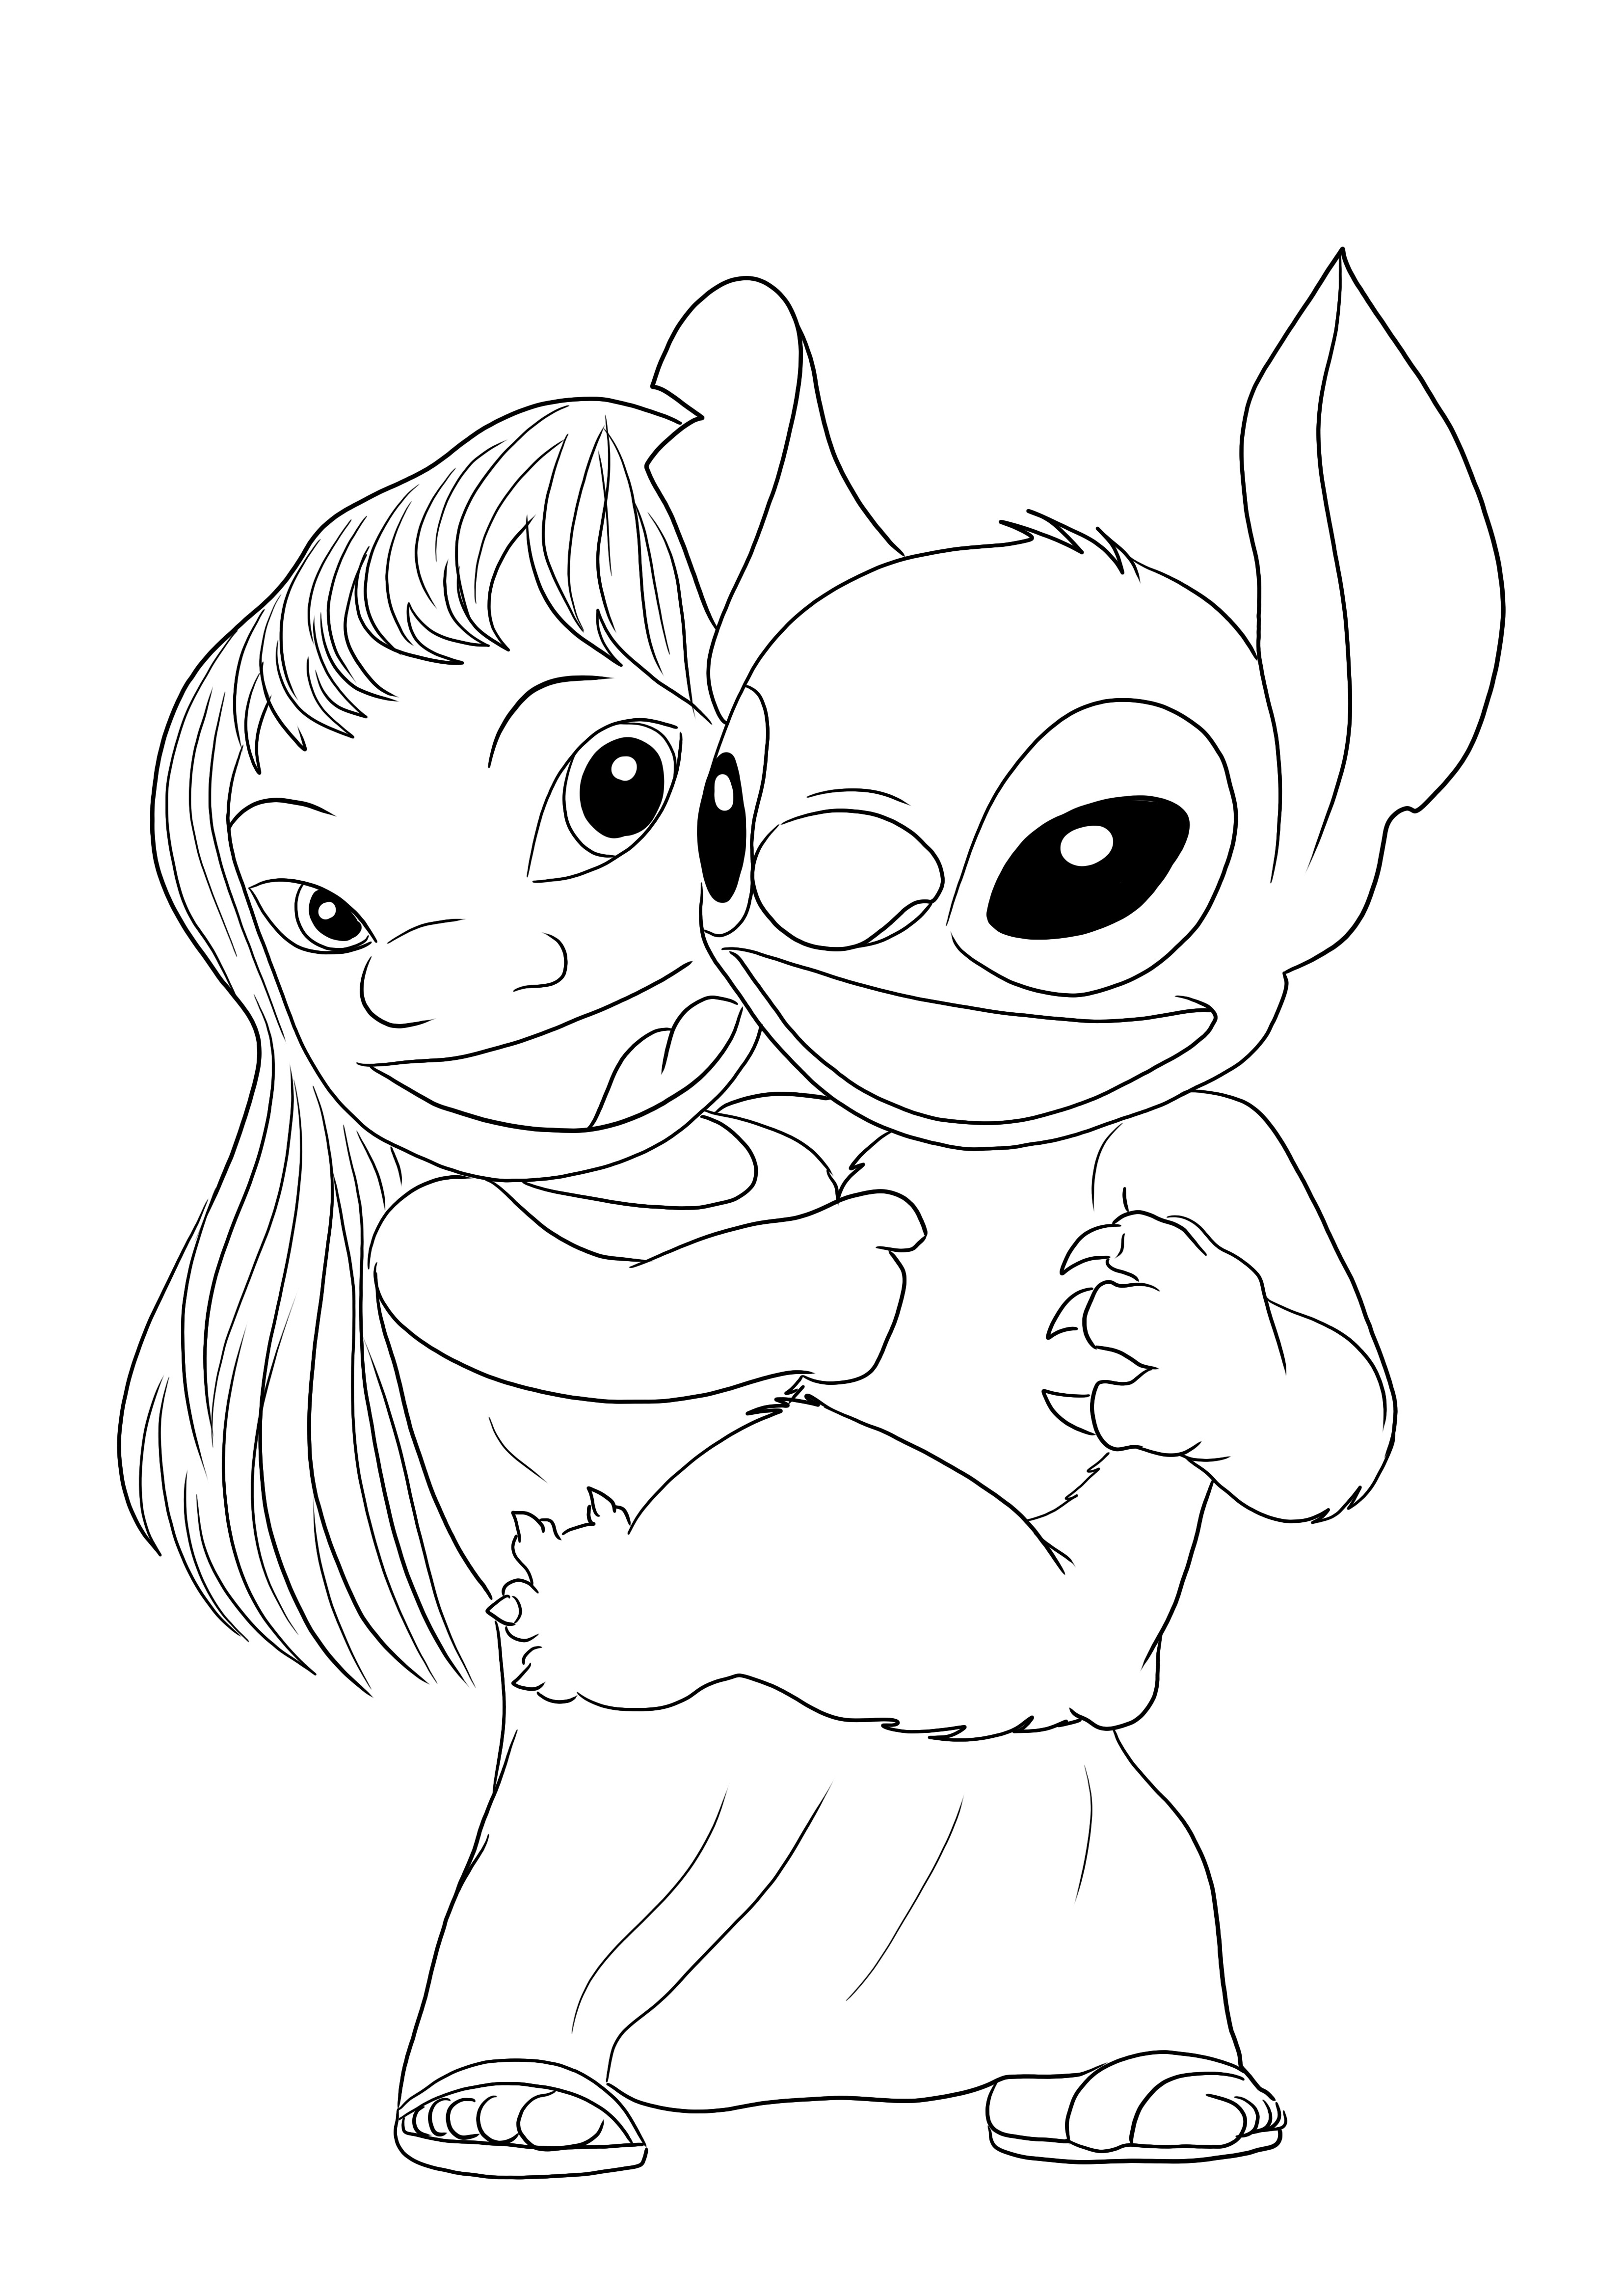 Dibujo para colorear de Lilo&Stitch riendo para imprimir gratis y facil de colorear